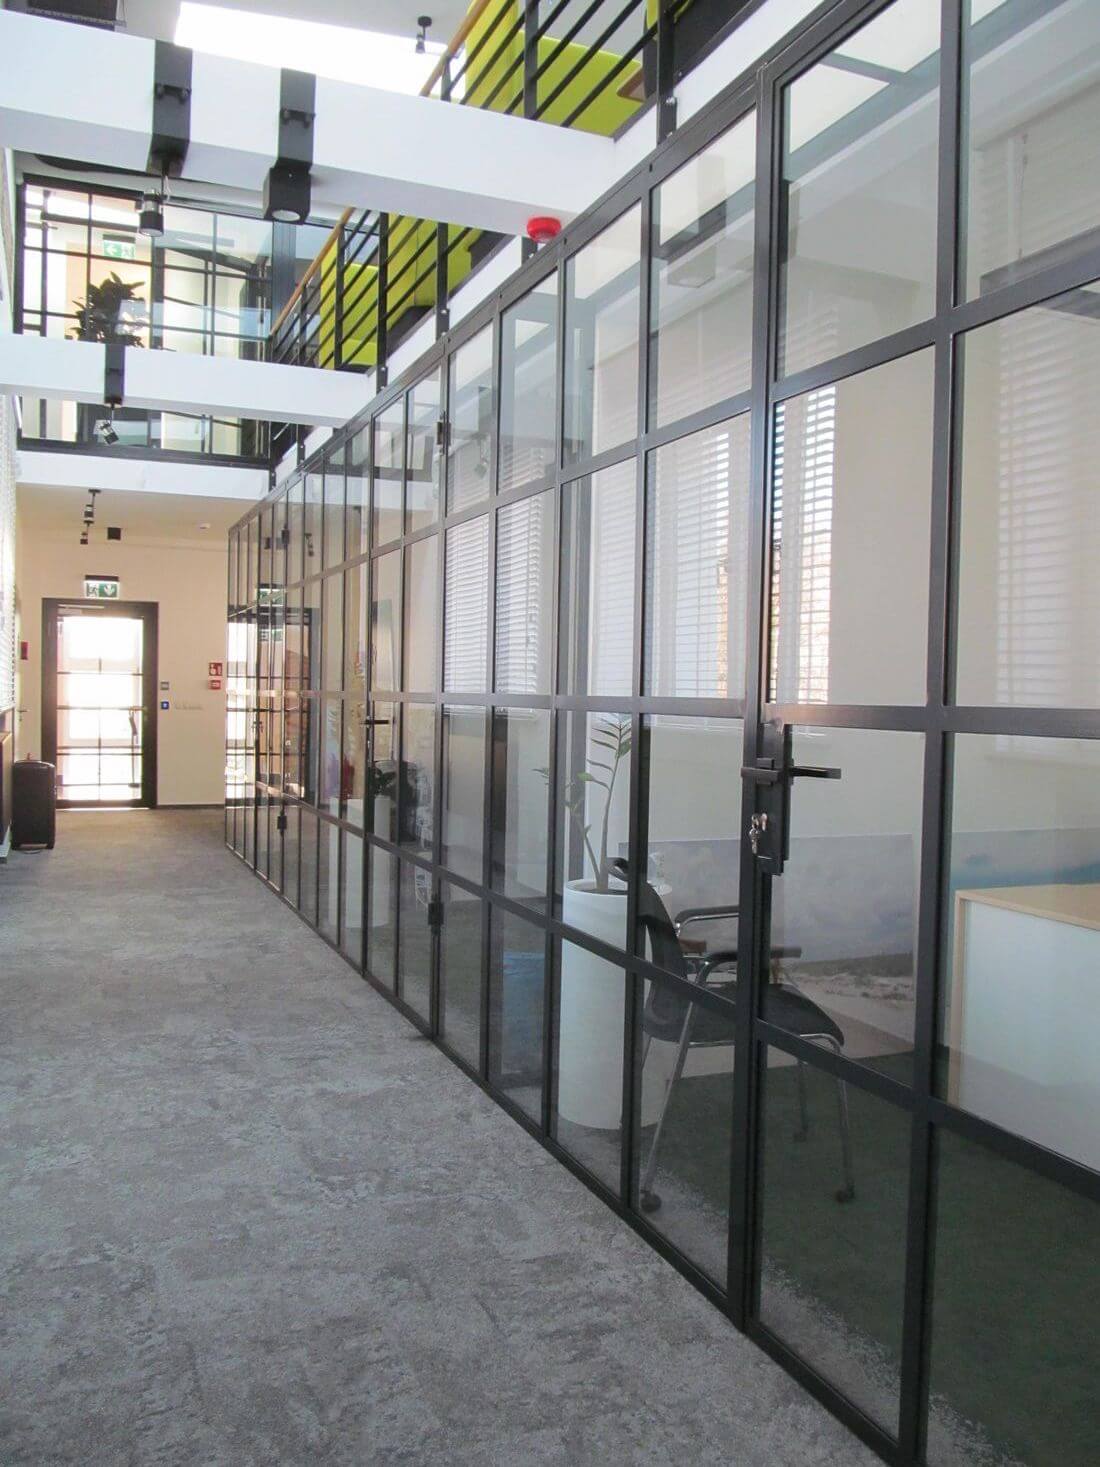 Lofttür und Loftwandsystem im industriellen Stil aus verstärktem Glas und Baustahl